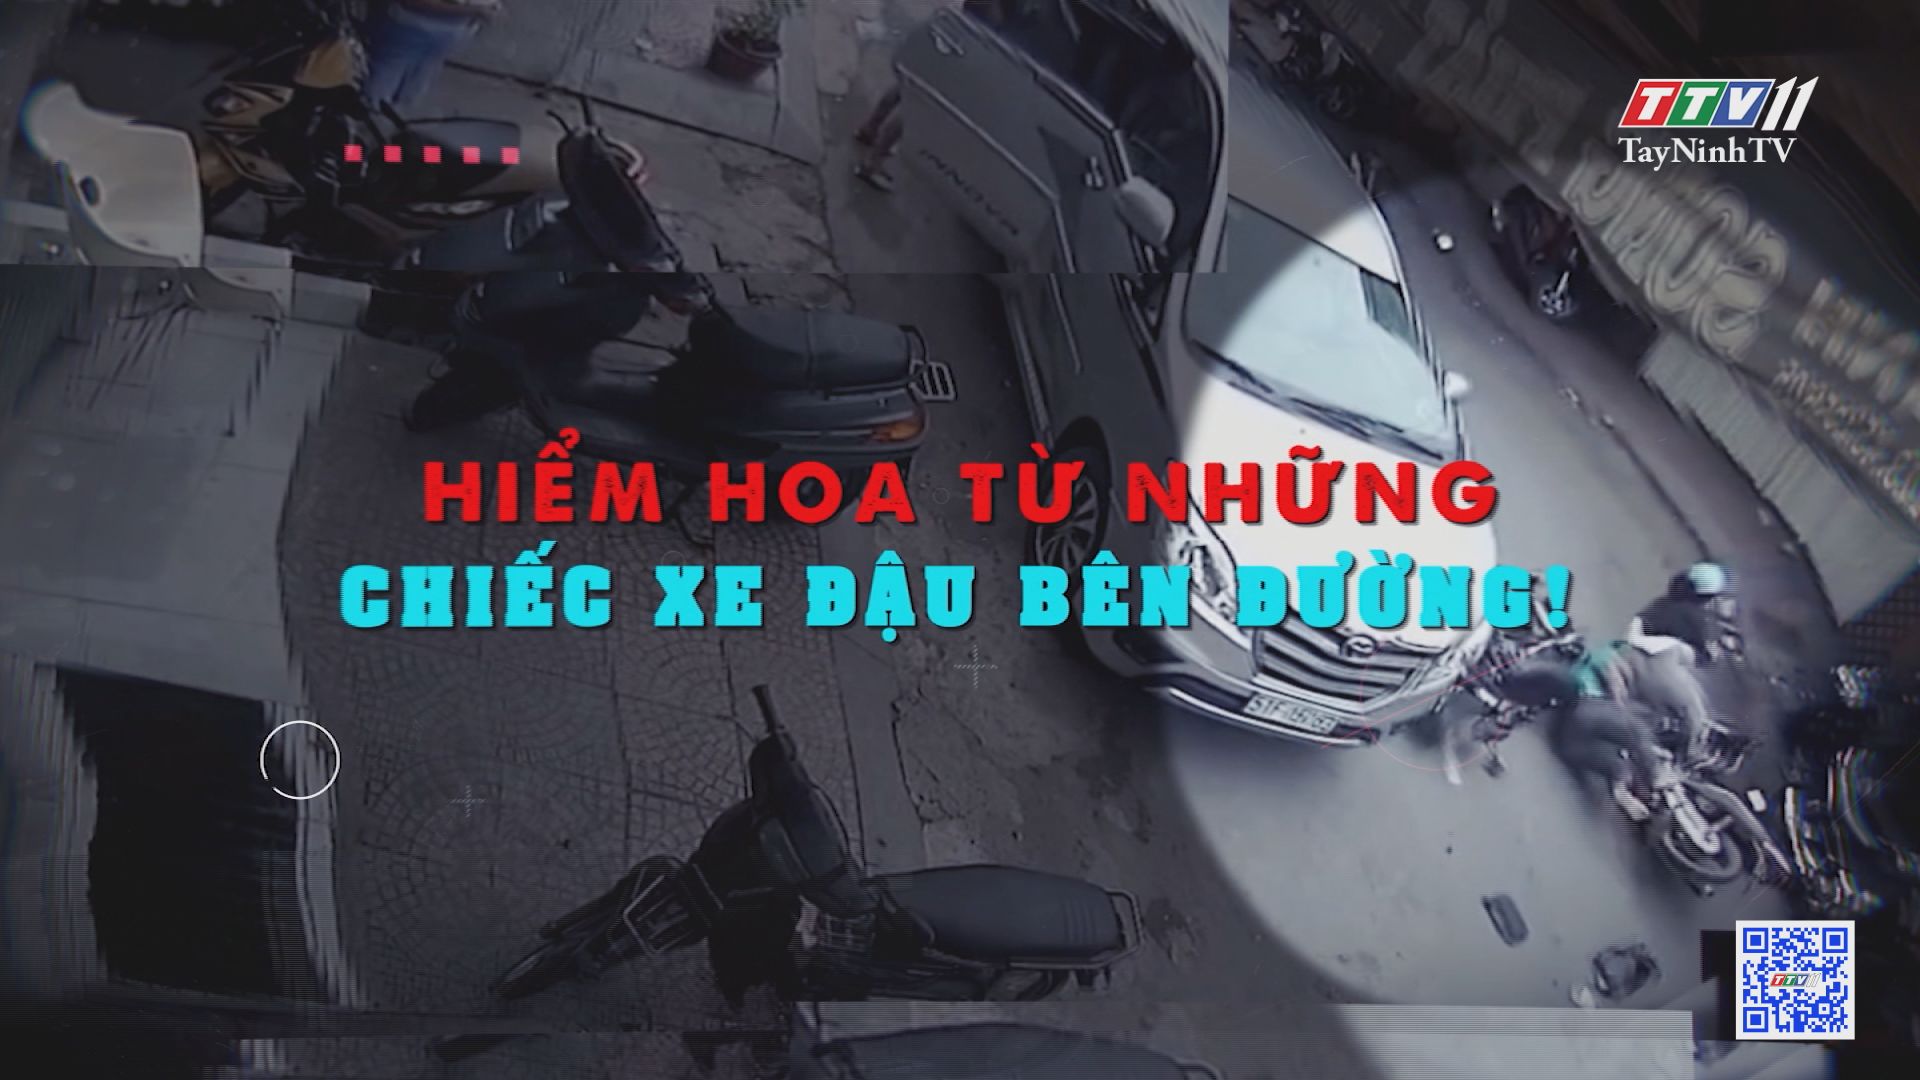 Hiểm họa từ những chiếc xe đậu bên đường | Văn hóa giao thông | TayNinhTV